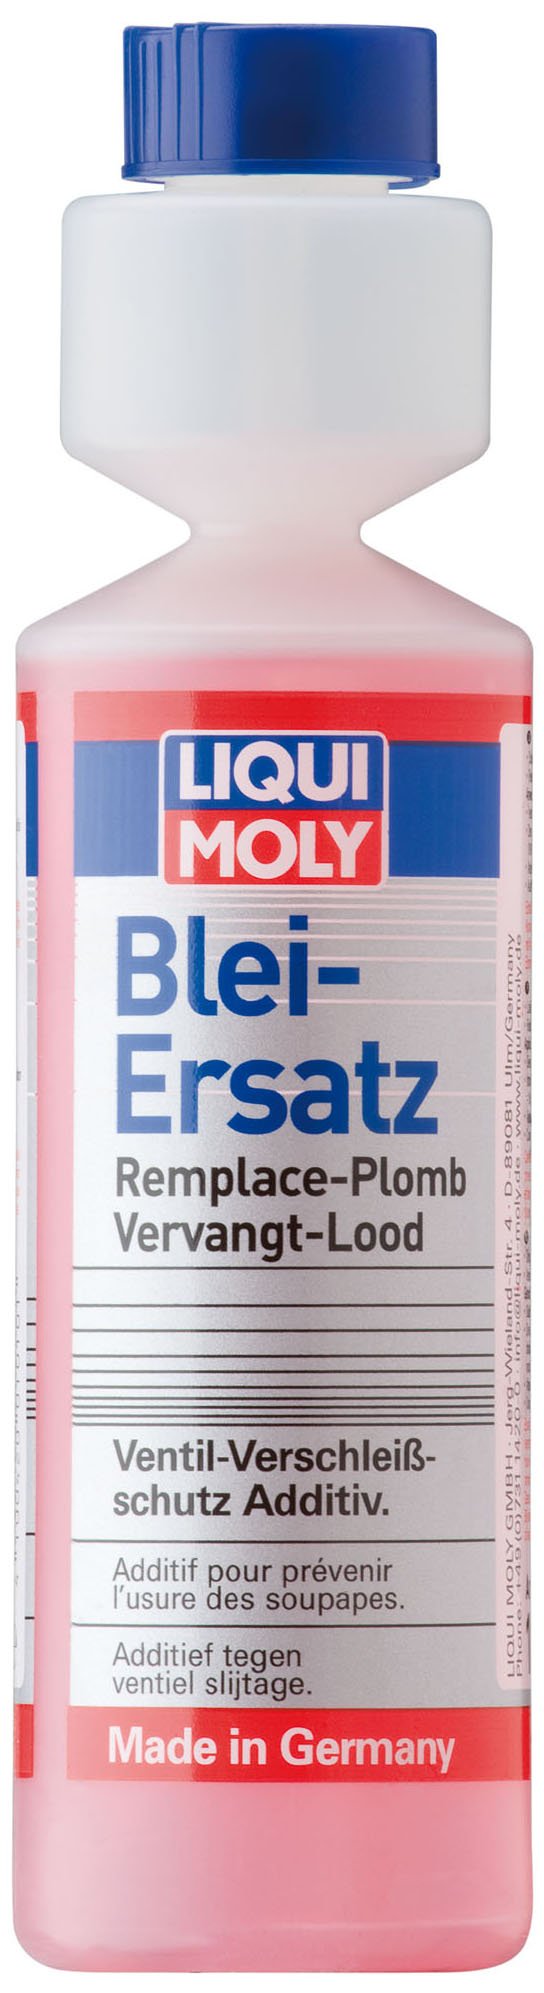 LIQUI MOLY Blei-Ersatz | 250 ml | Benzinadditiv | Art.-Nr.: 1010 von Liqui Moly